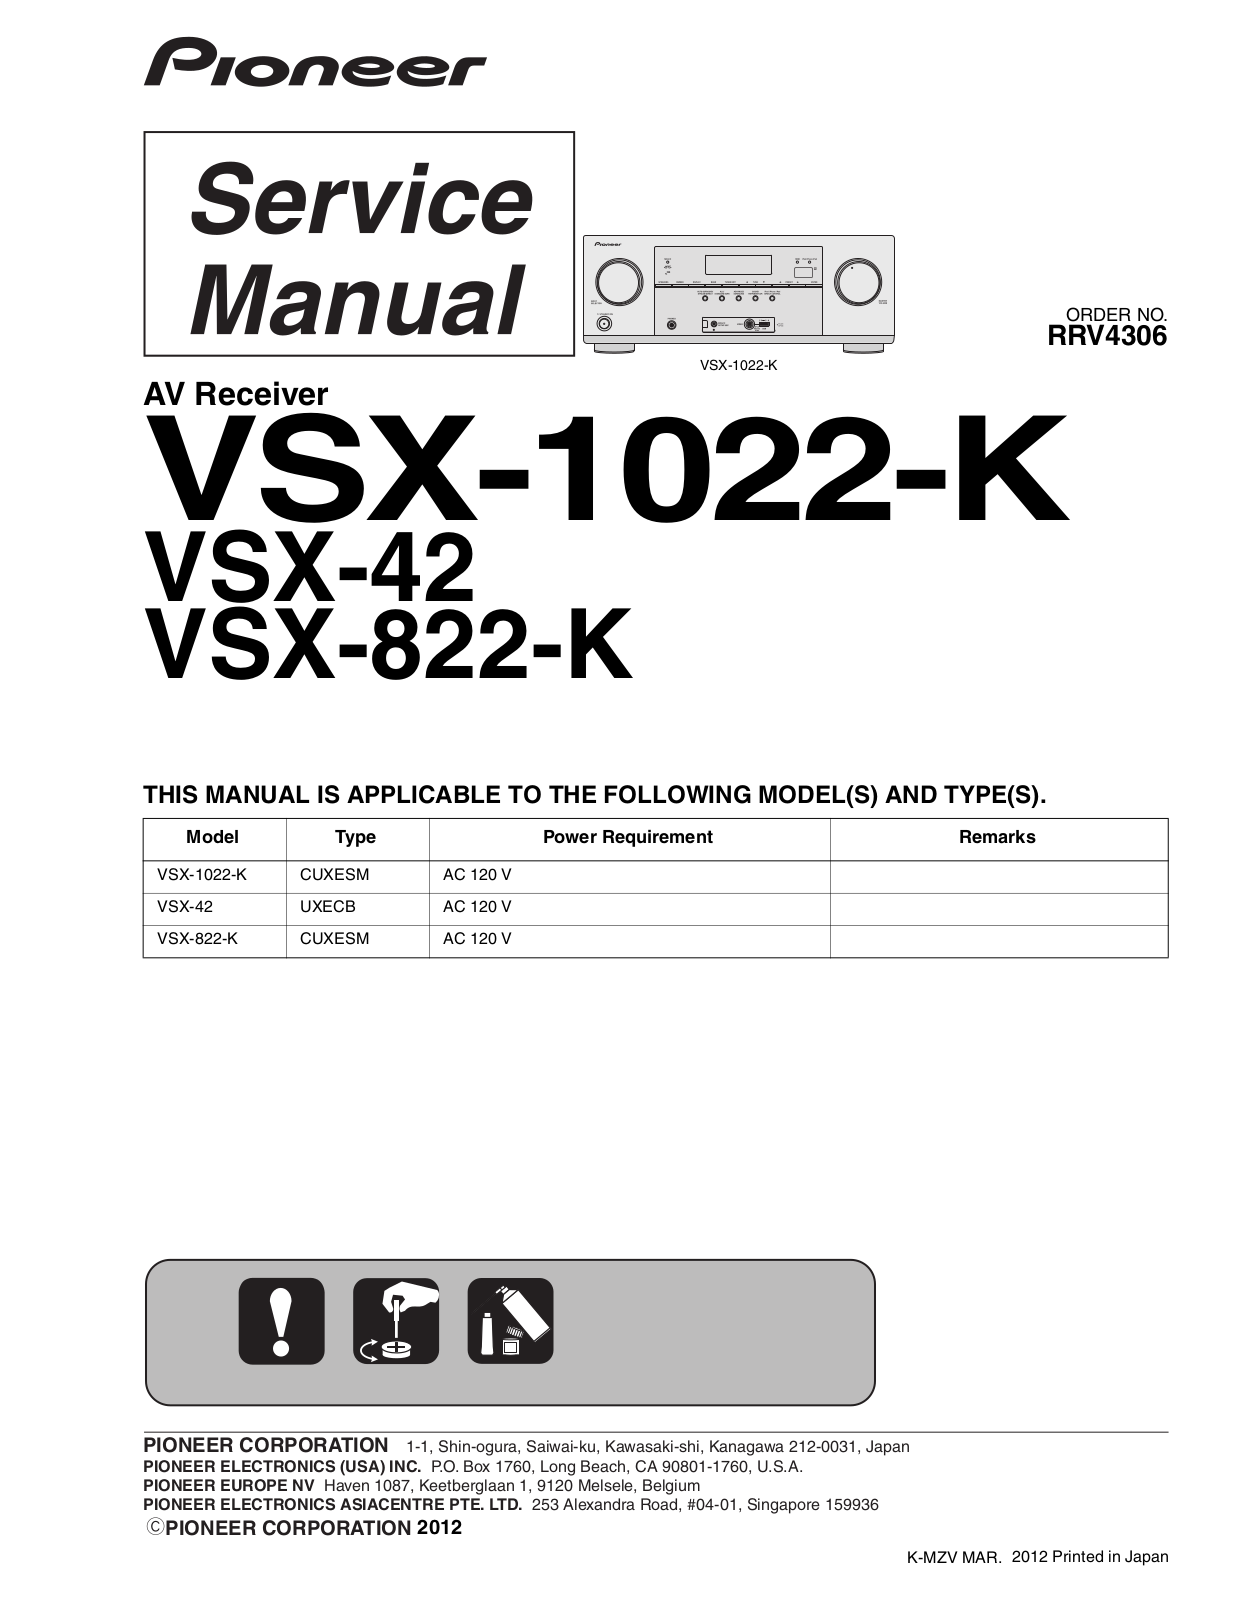 Pioneer VSX-1022-K, VSX-822-K, VSX-42 Service manual